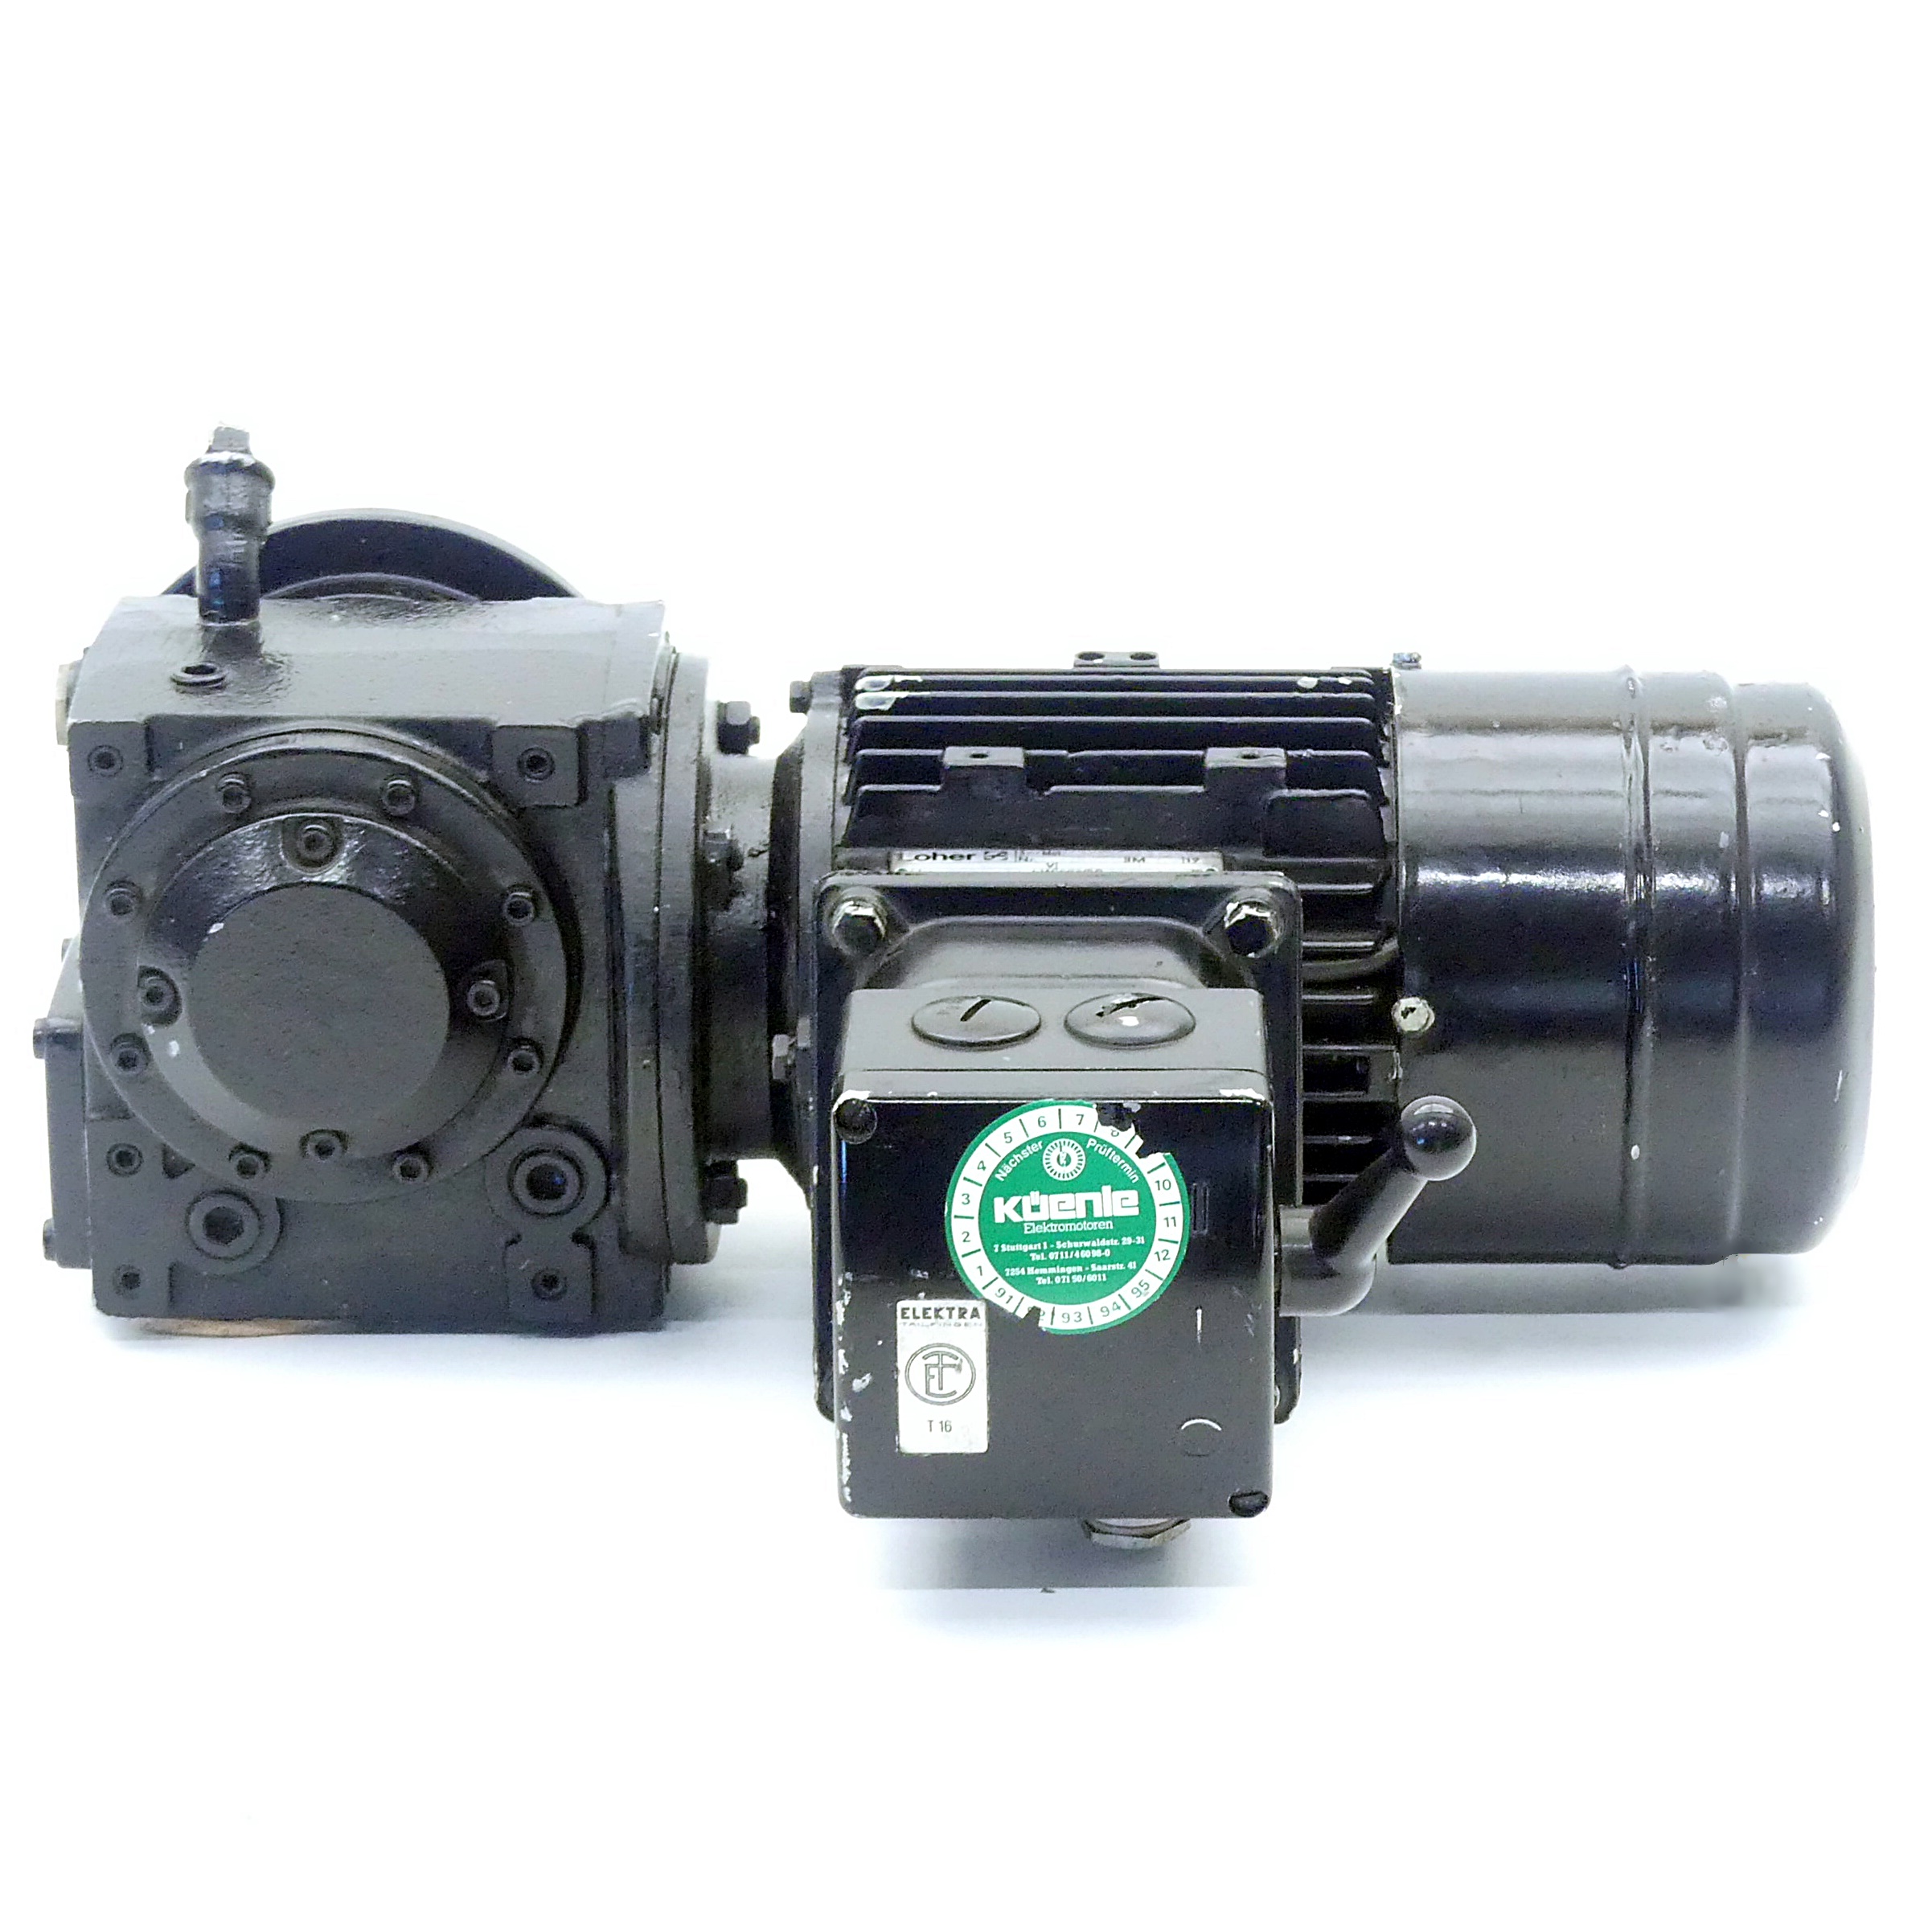 Getriebemotor ABCA-01BG-426 + DVW1-1451-022/033 